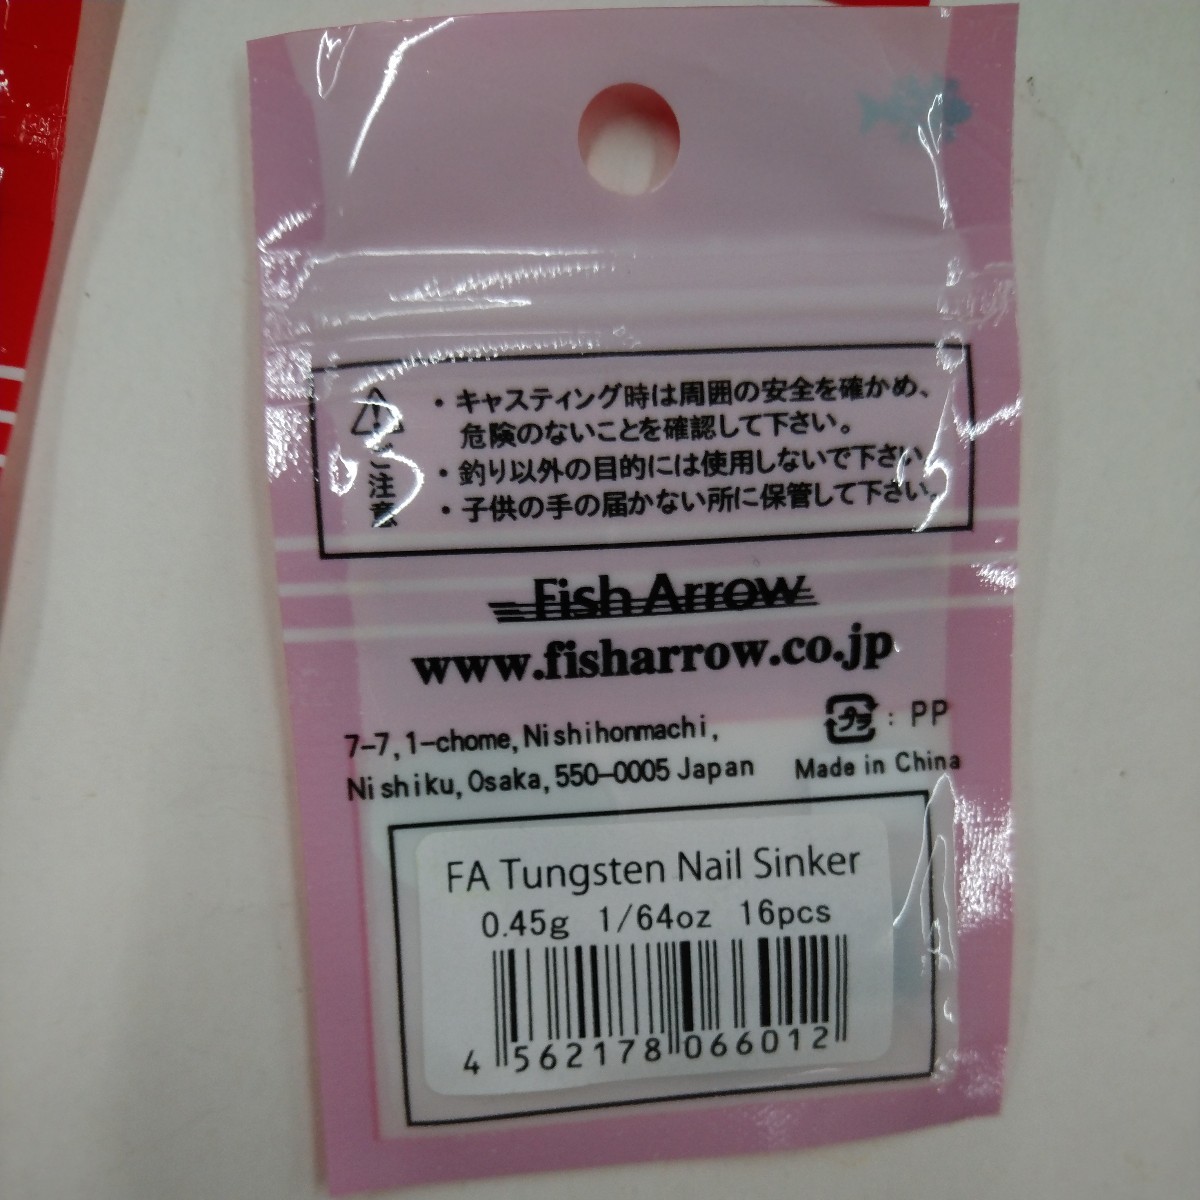 新品 Fish Arrow フィッシュアロー FA タングステン ネイルシンカー 0.45g 1/64oz 4袋セット_画像3